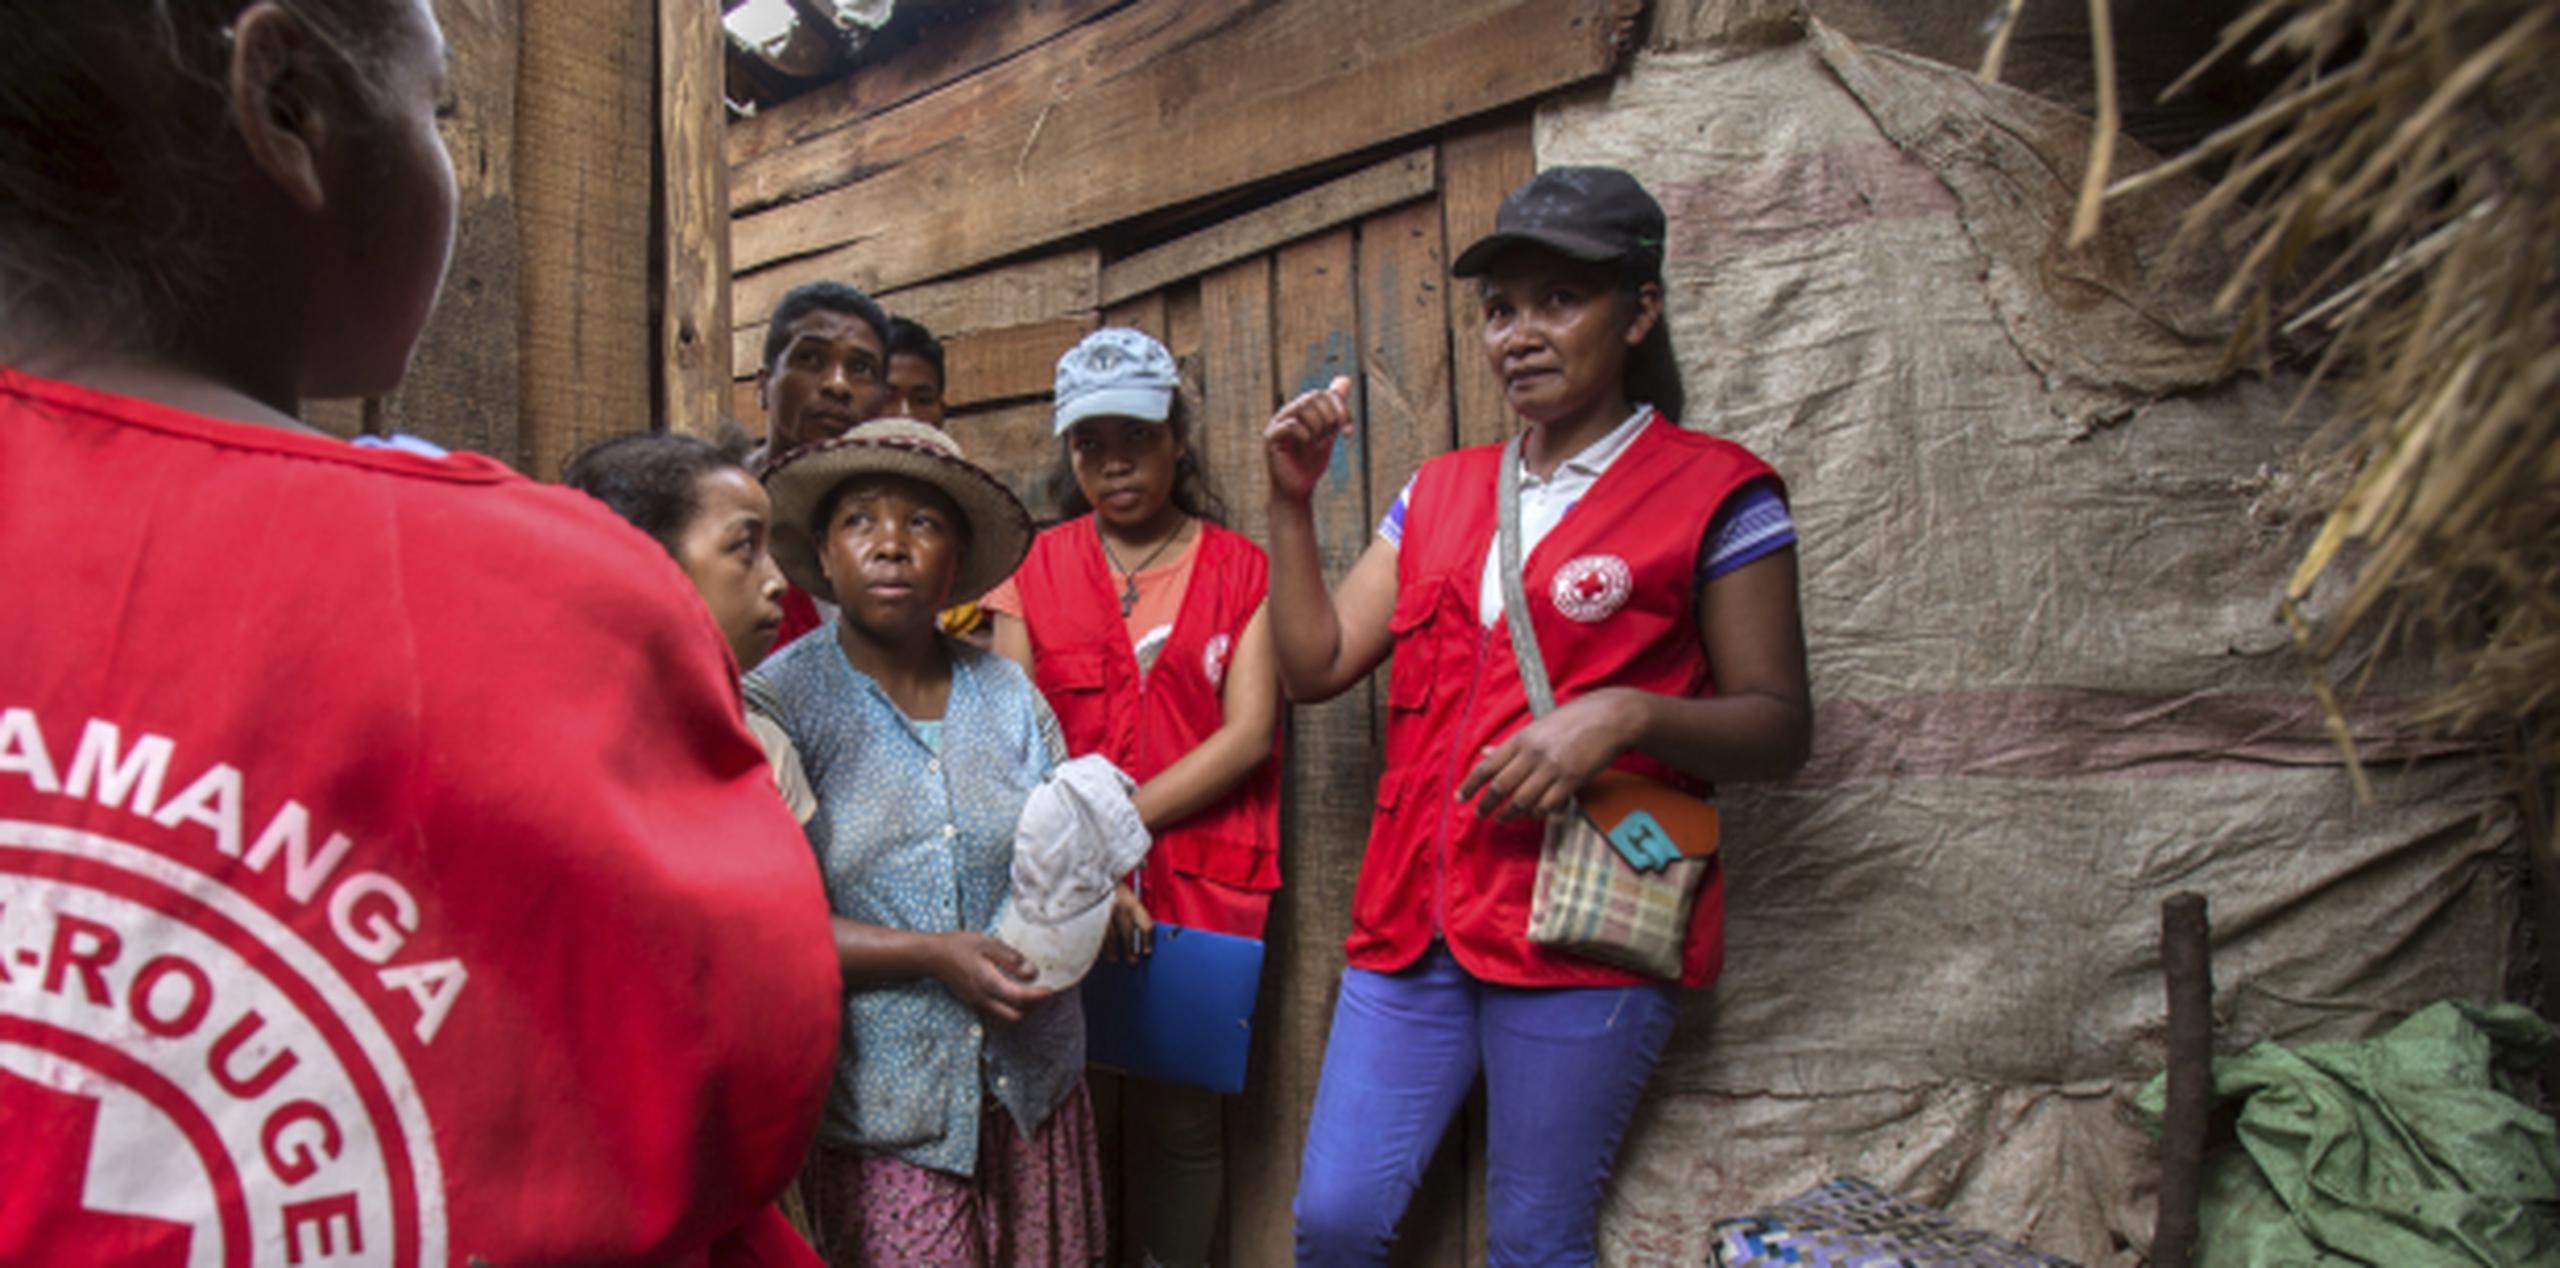 Voluntarios de la Cruz Roja hablan con pobladores acerca del brote de peste que ha desatado una ola de pánico en Madagascar. (AP/Alexander Joe)
